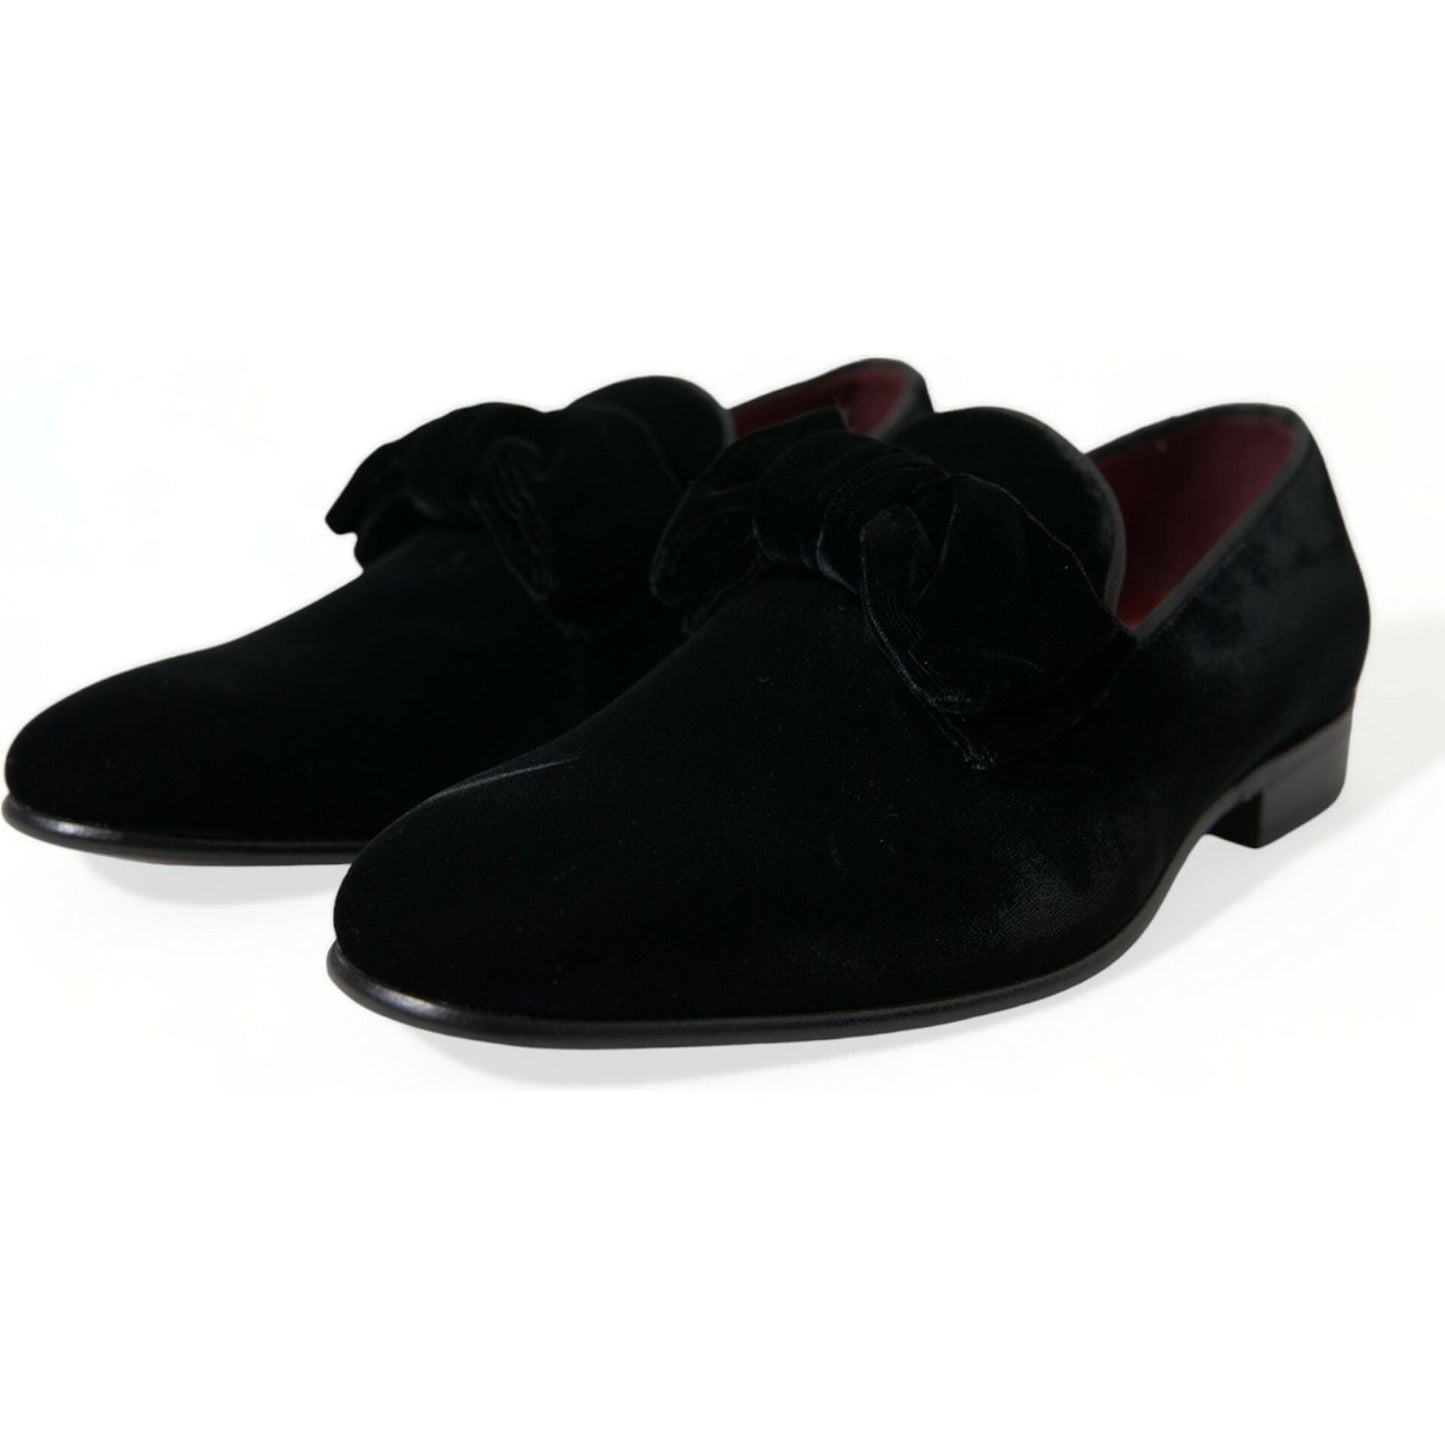 Dolce & Gabbana Elegant Black Velvet Loafers - Men's Luxury Footwear black-velvet-loafers-formal-dress-shoes-2